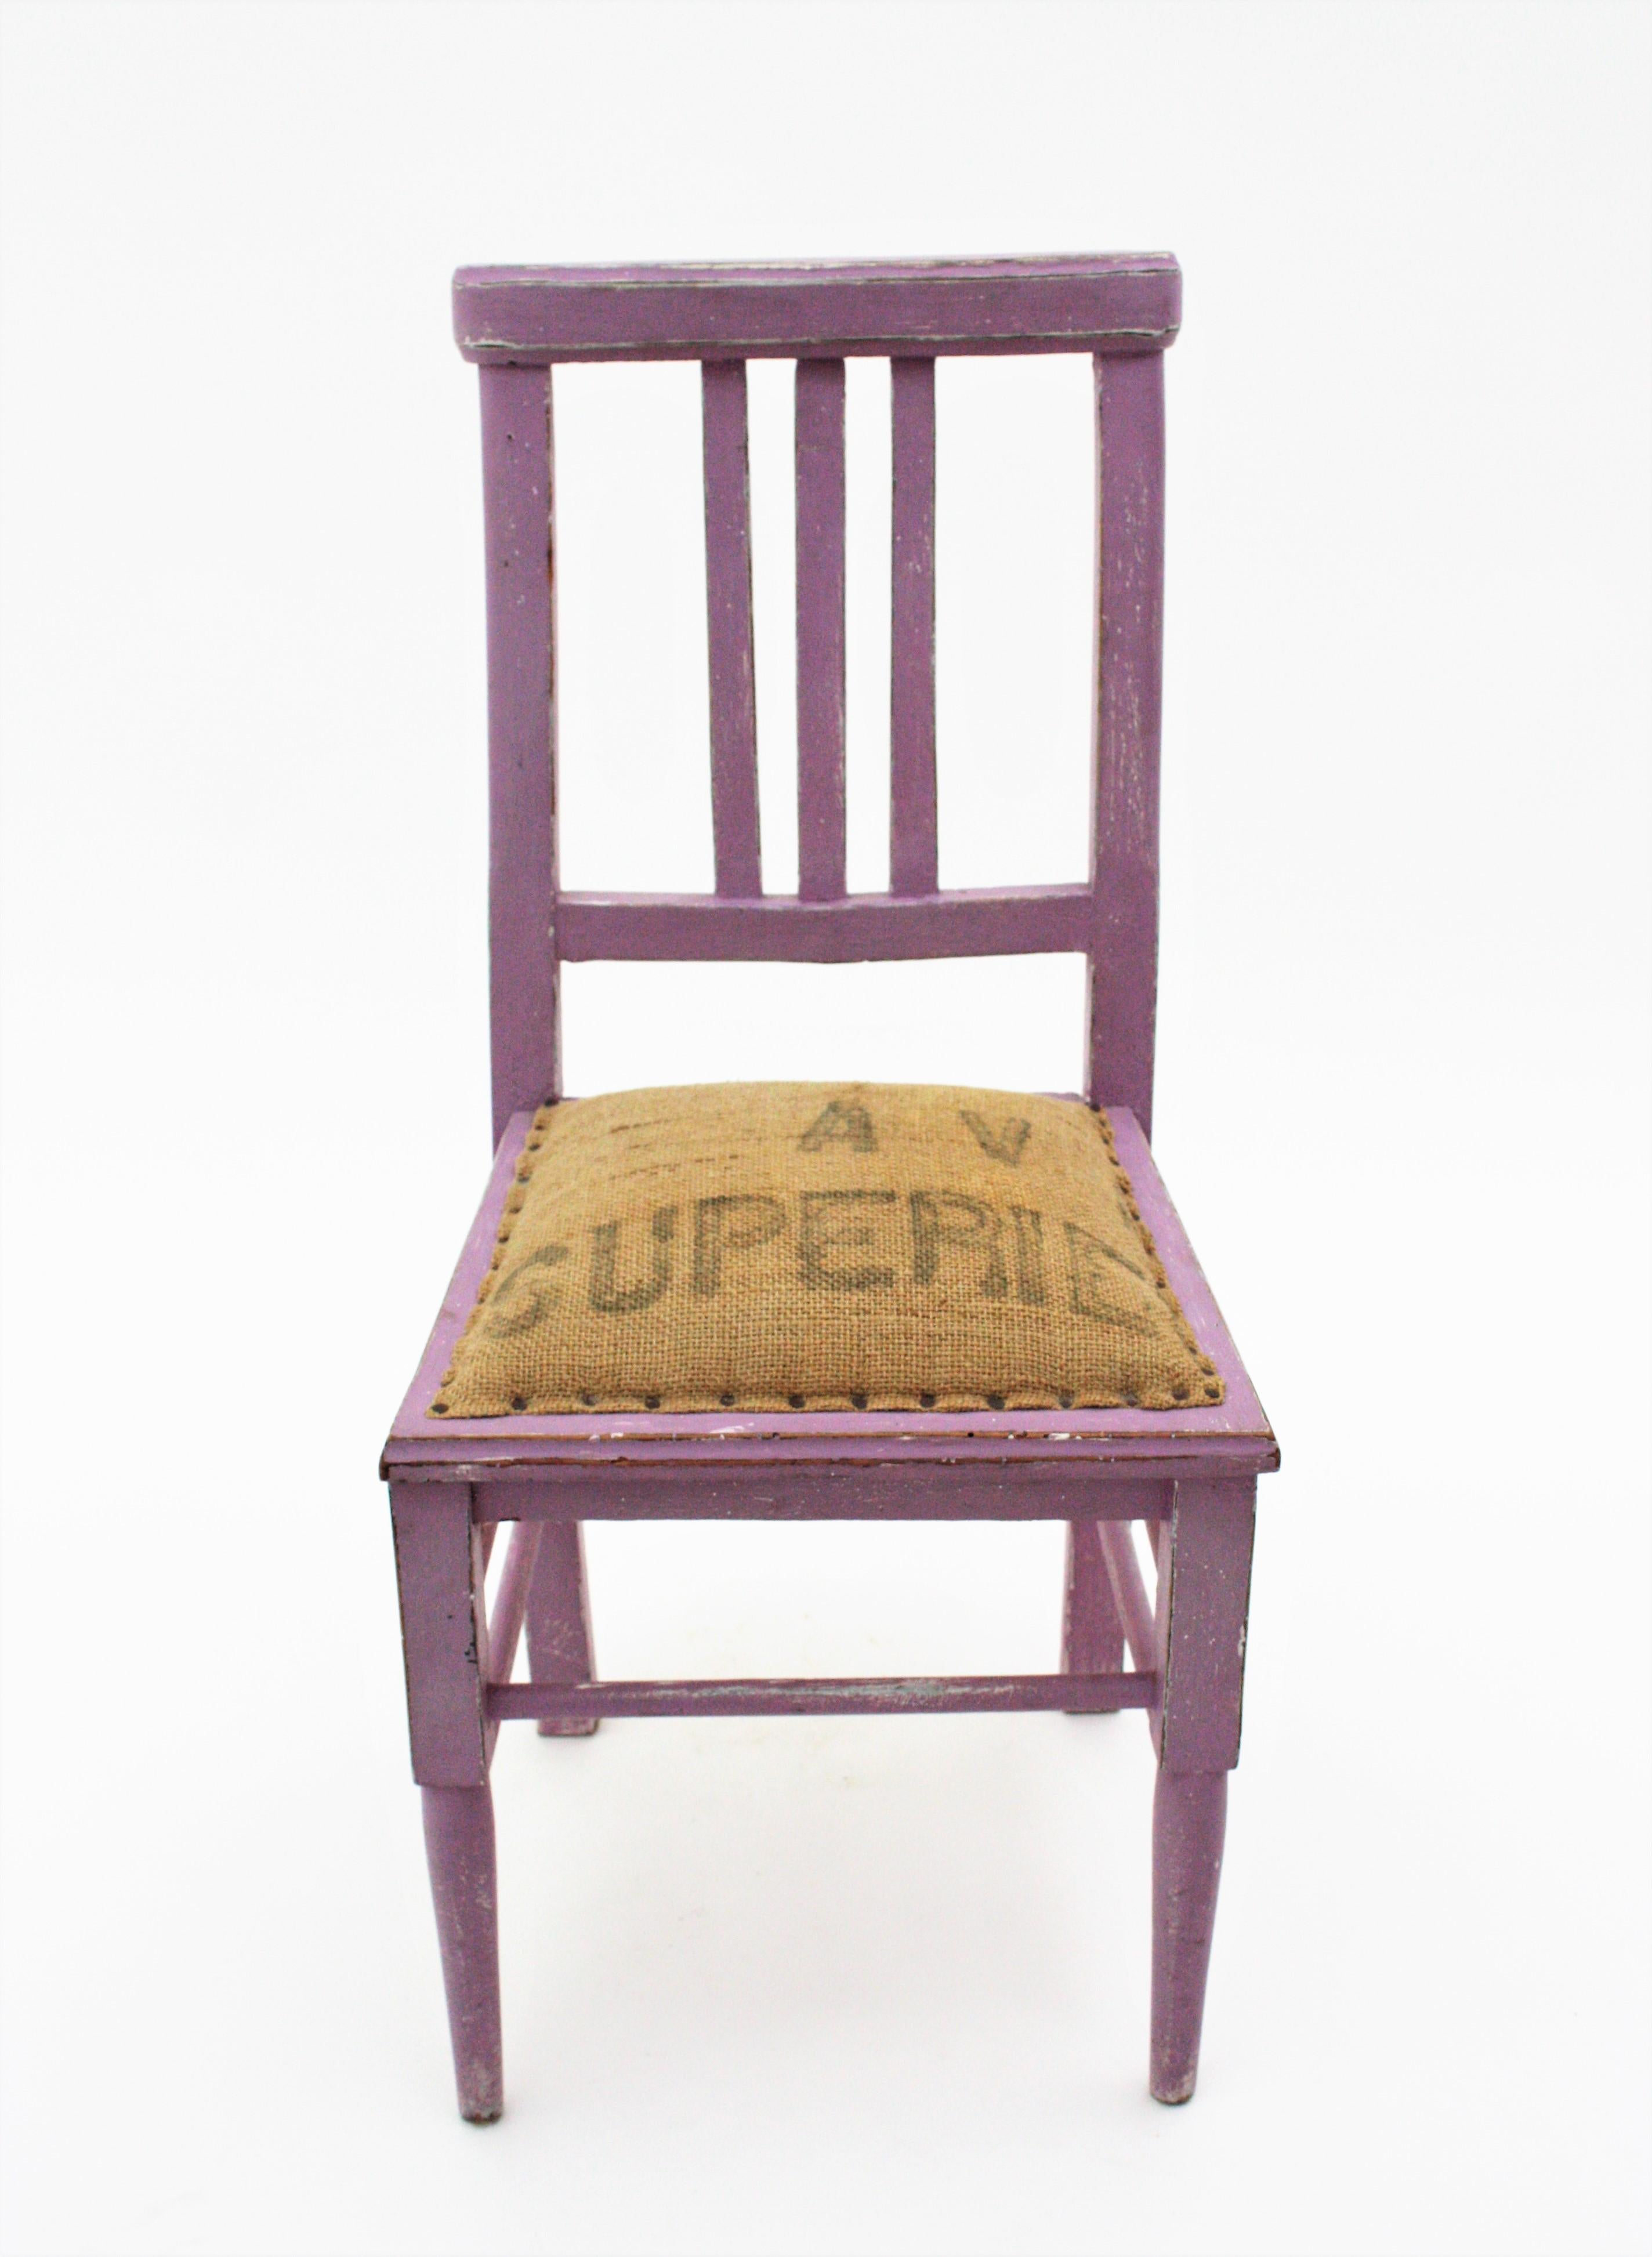 Ein cooler Kinderstuhl aus Holz mit lavendelfarbener Patina. Frankreich, 1940er Jahre
Dieser niedliche Stuhl ist aus Holz handgefertigt und lavendelfarben lackiert. Der Sitz ist mit Jutesäcken gepolstert.
Es hat den ganzen Geschmack der